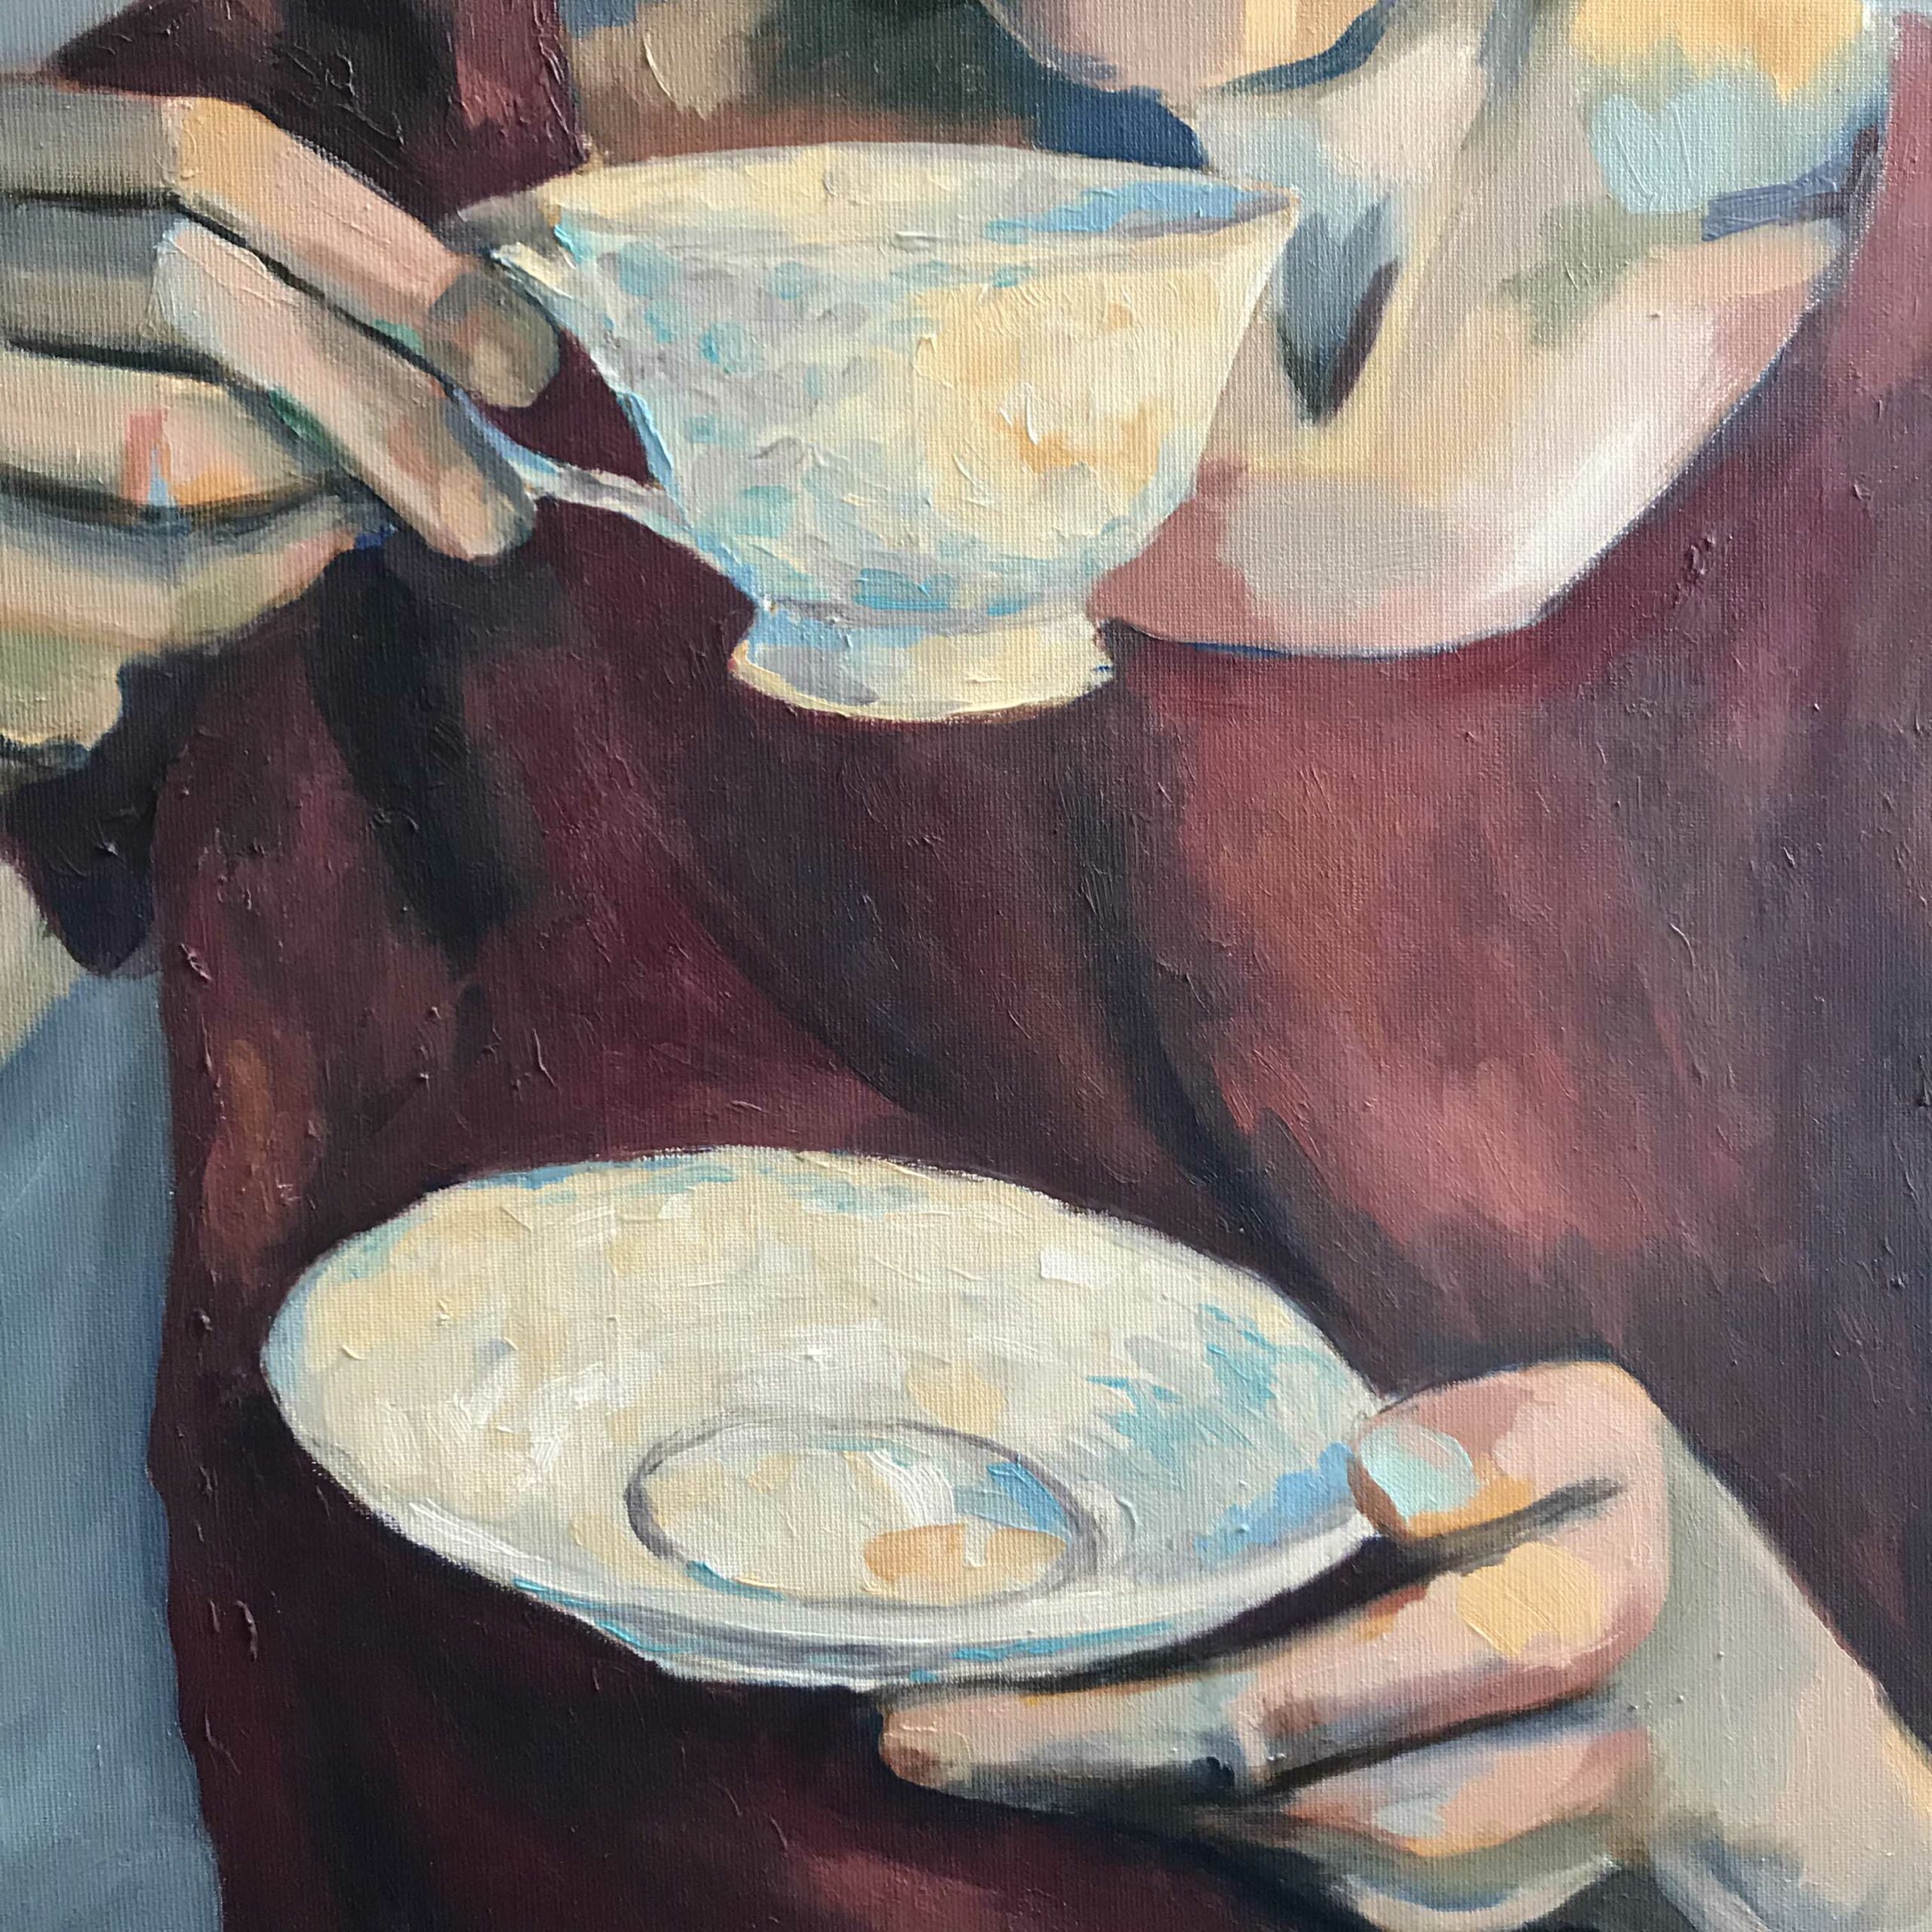 Coffee mug - detail